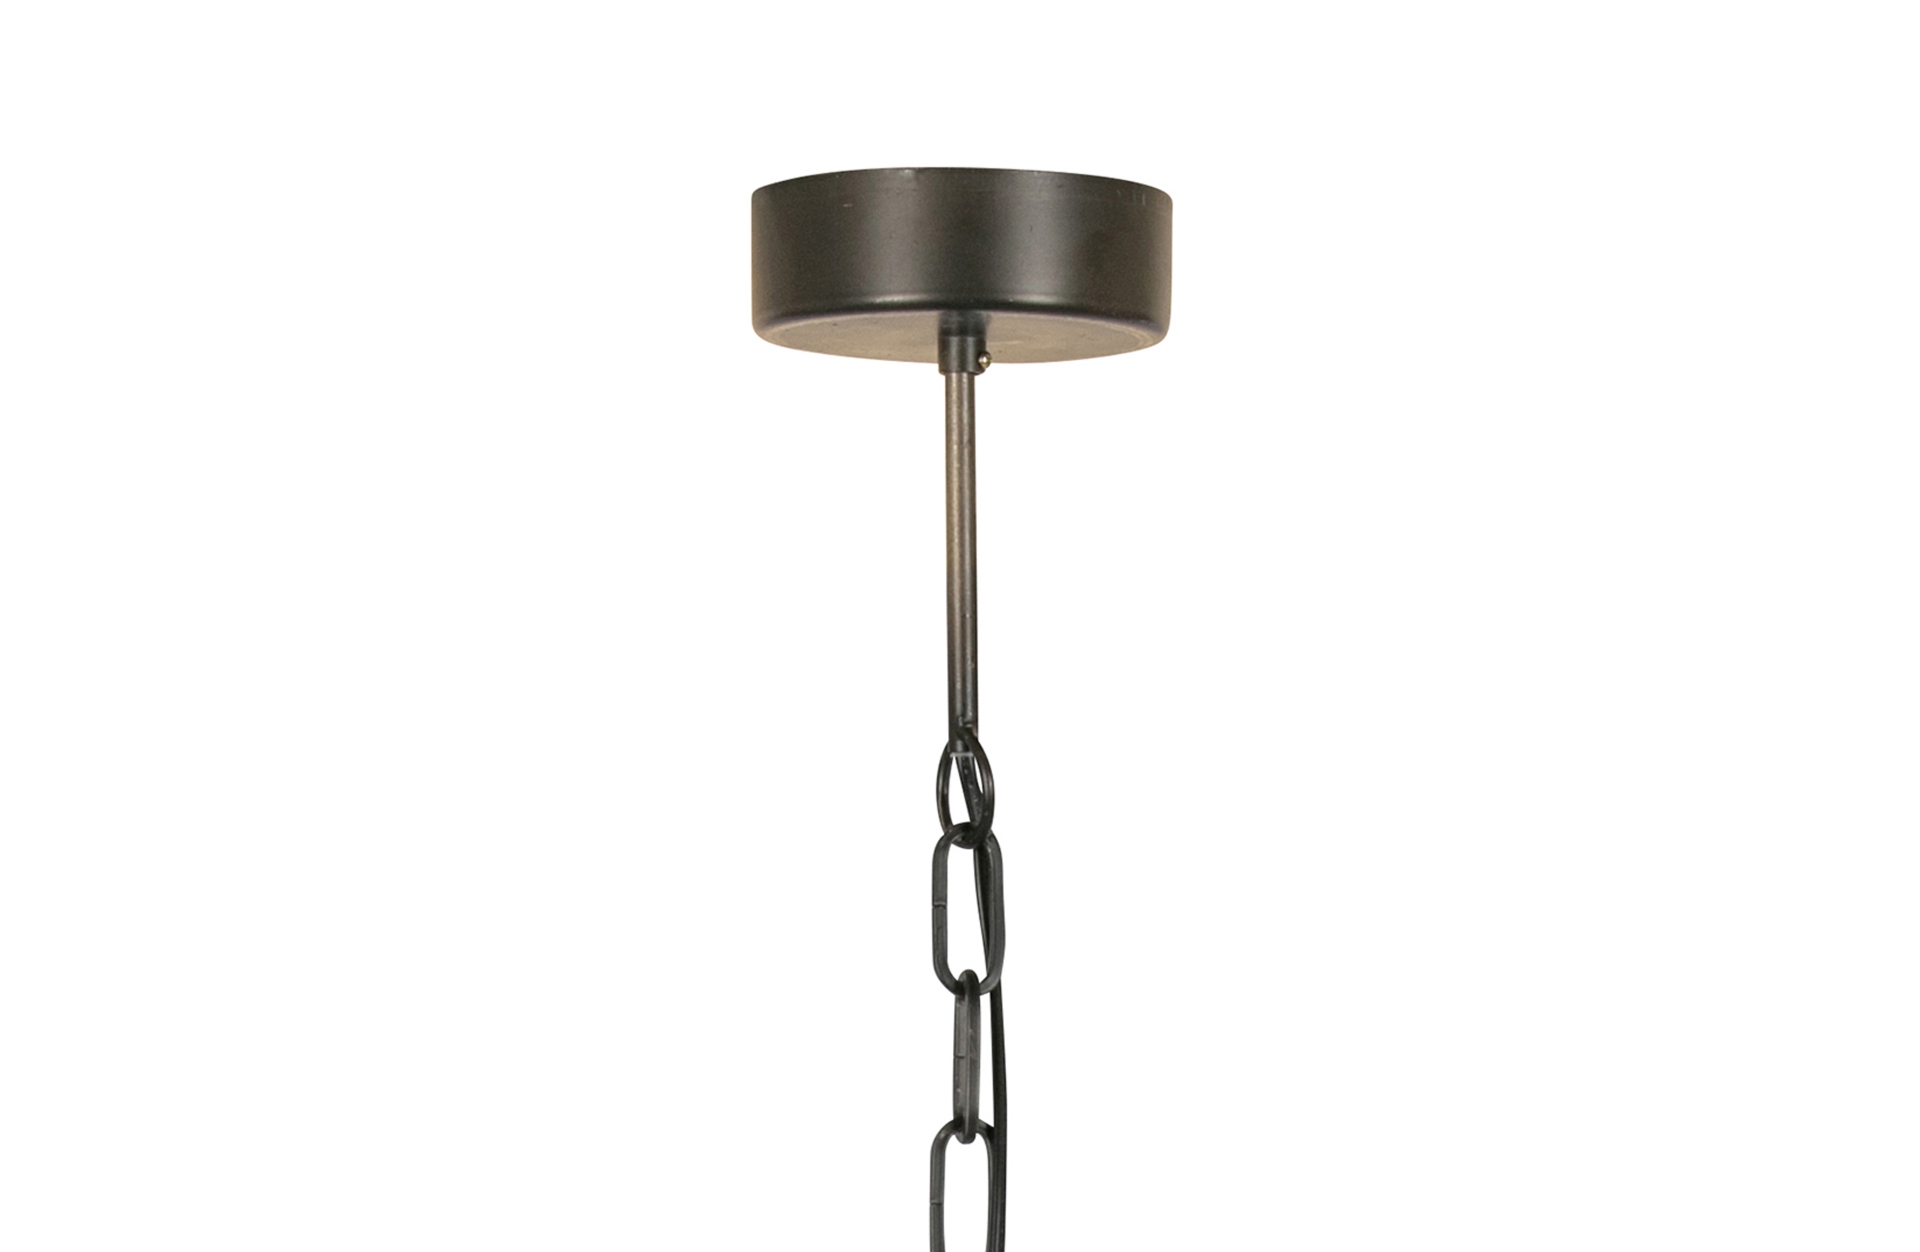 Die Hängelampe Kaki überzeugt mit ihrem modernen Design. Gefertigt wurde die Lampe aus Metall, welches einen schwarzen Farbton besitzt.